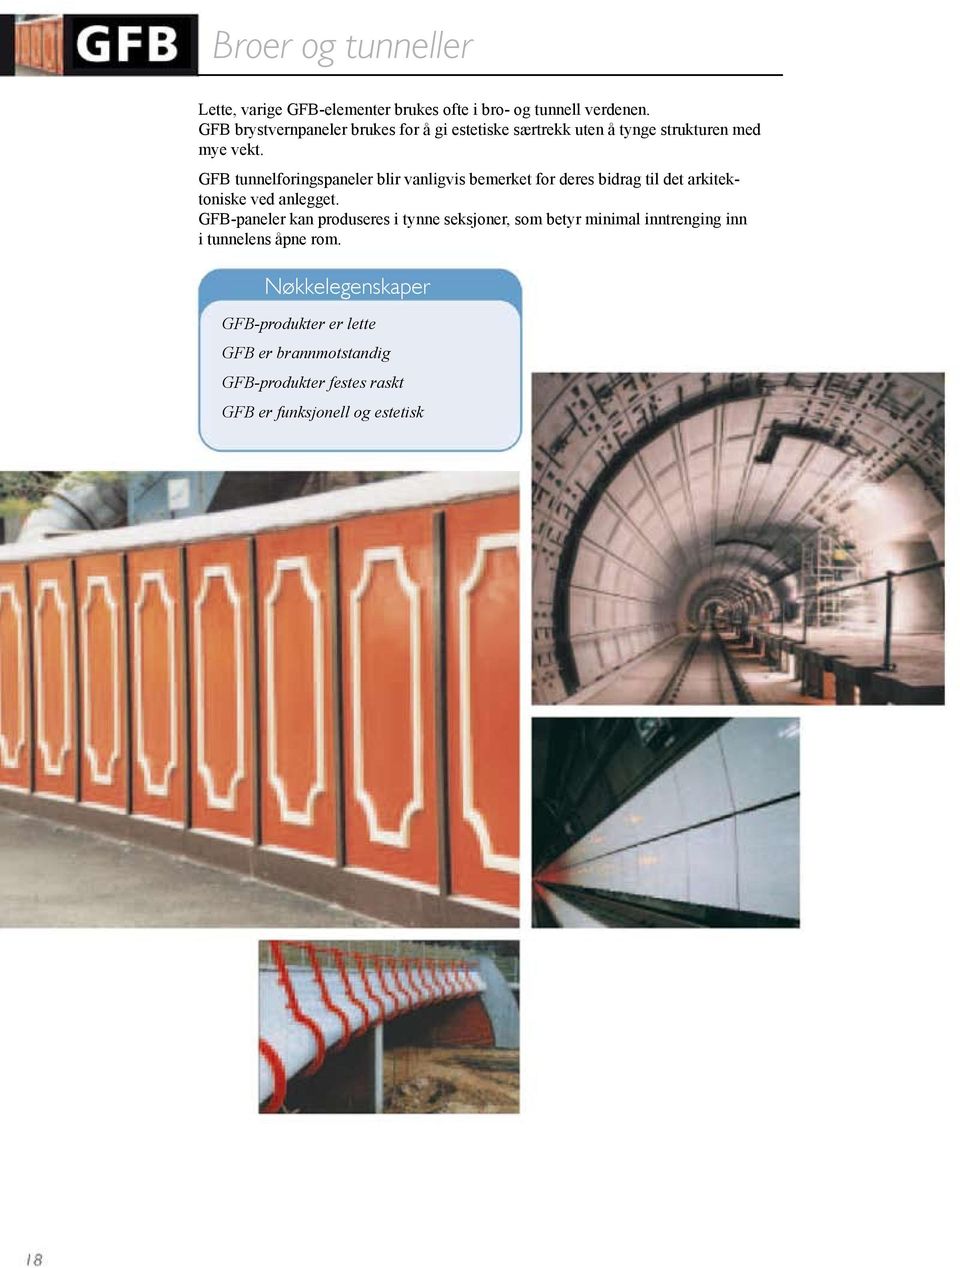 GFB tunnelforingspaneler blir vanligvis bemerket for deres bidrag til det arkitektoniske ved anlegget.